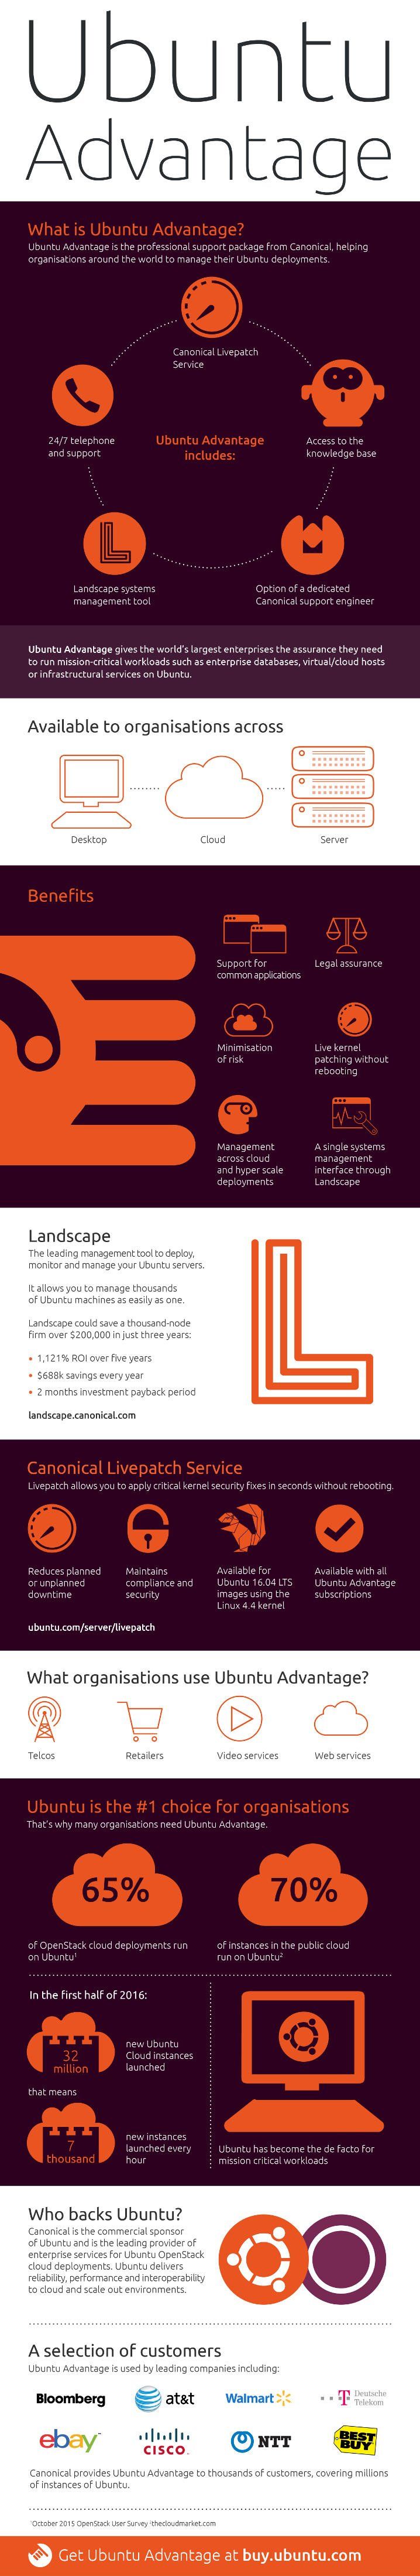 infographic ubuntu advantage